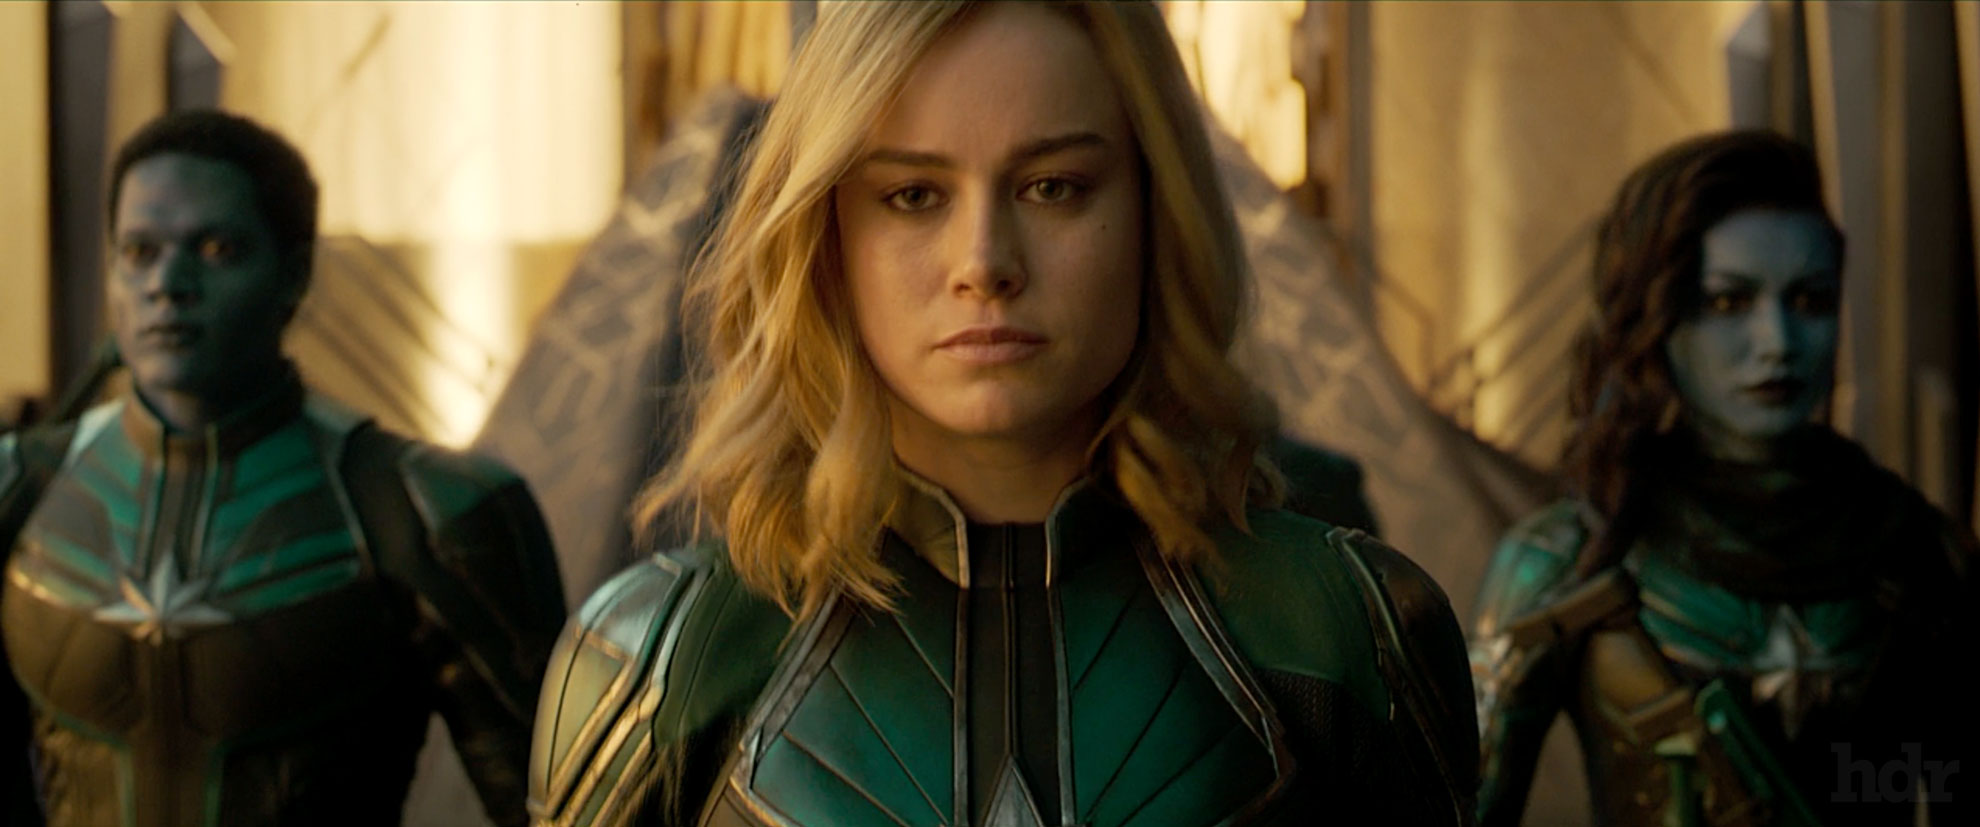 Captain Marvel starring Brie Larson Marvel / Disney Studios